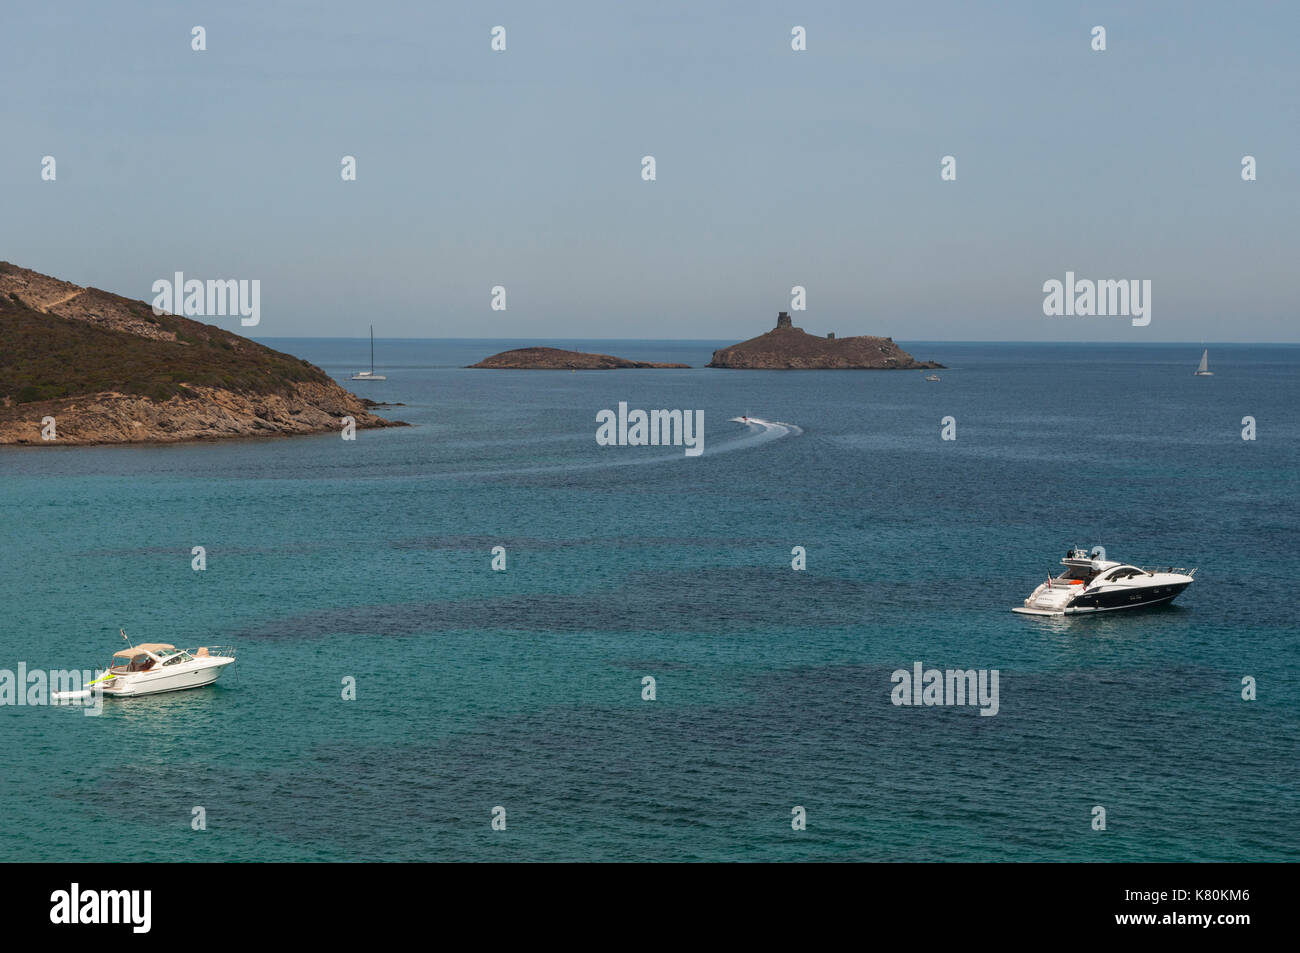 Corsica, Cap Corse: speedboats in the Mediterranean Sea with view of the nature reserve of les Iles Finocchiarola (A Terra, Mezzana and Finocchiarola) Stock Photo